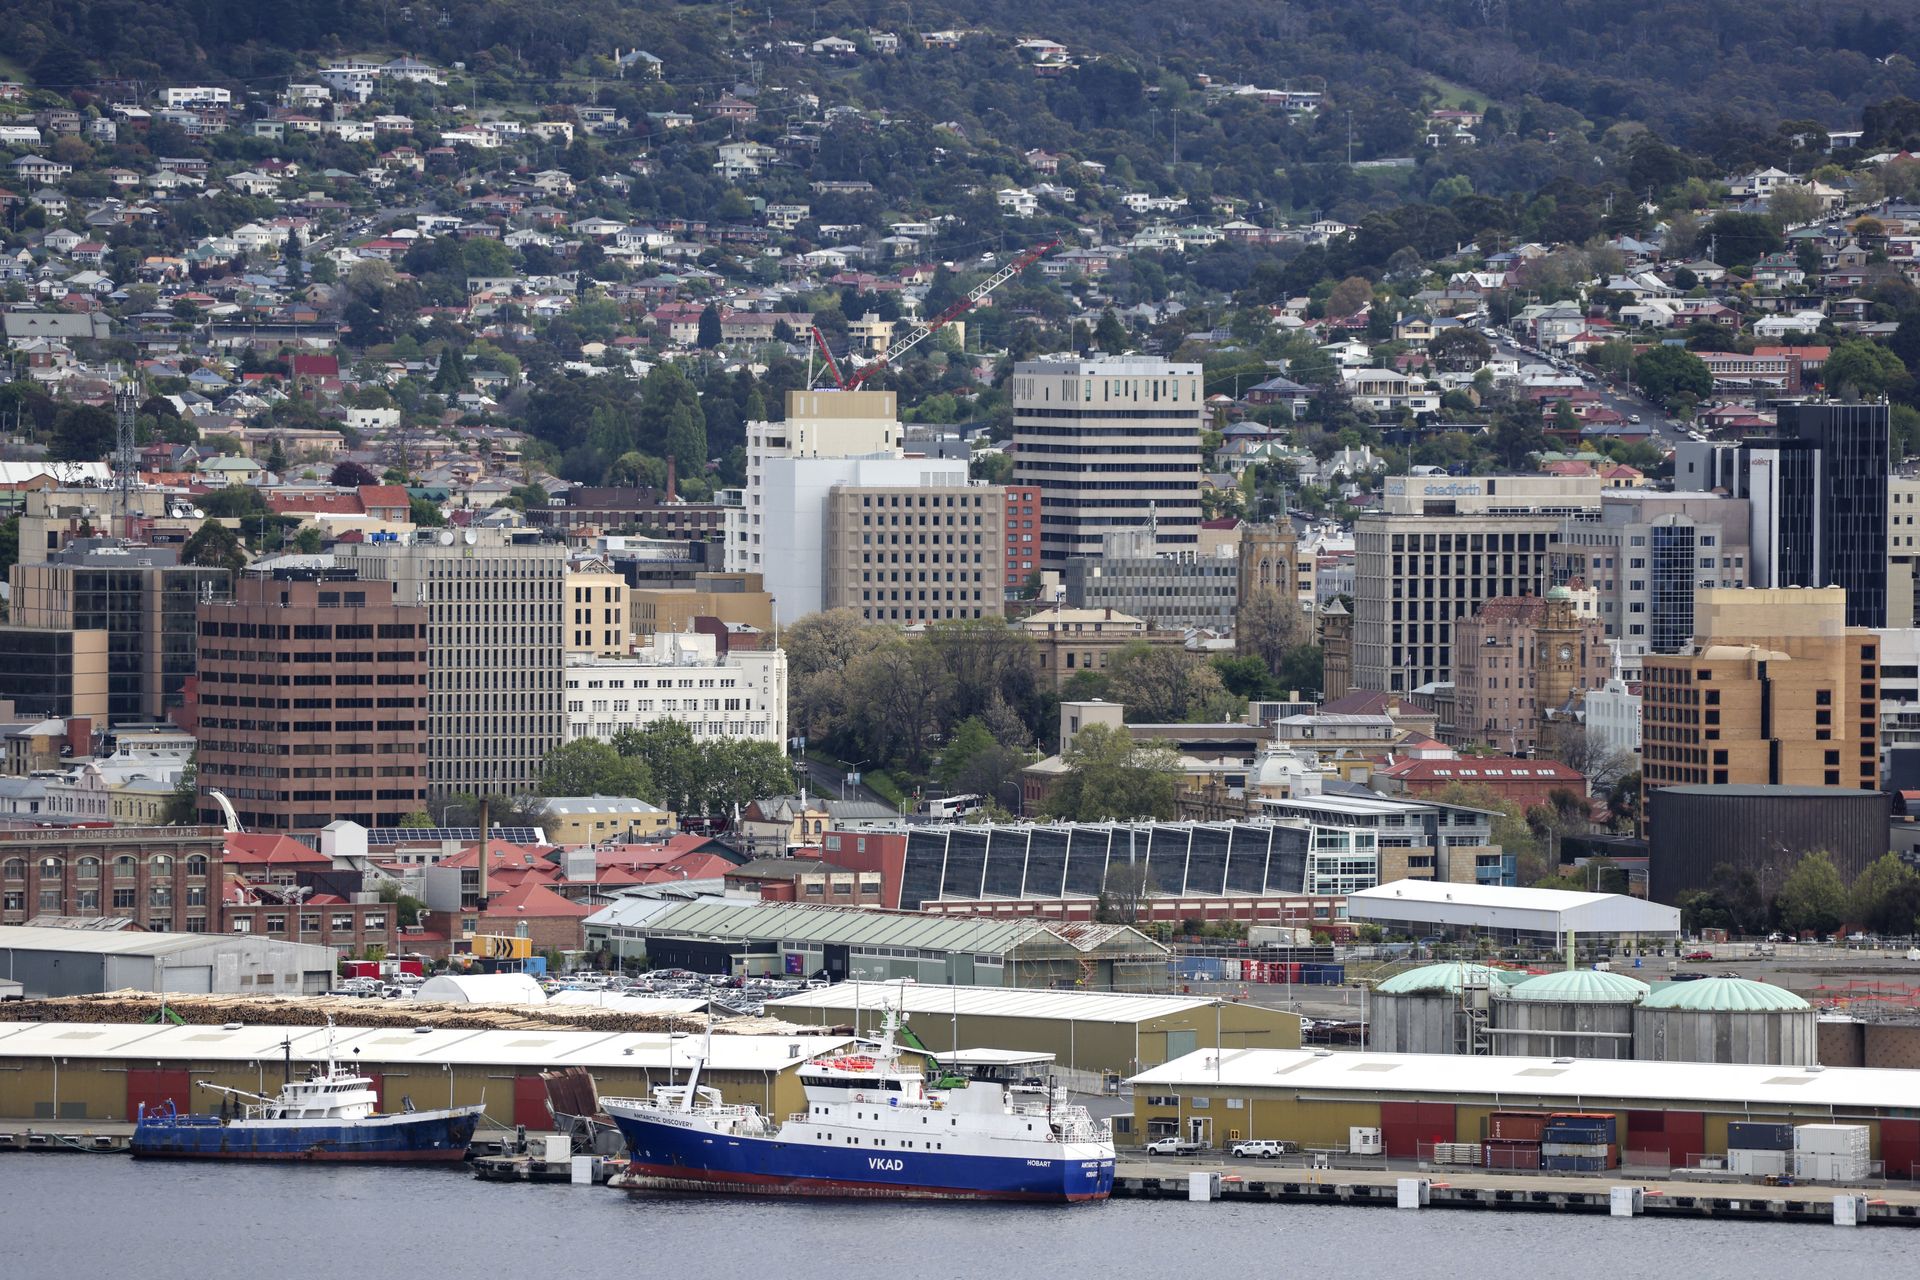 De skyline van Hobart in Australië.